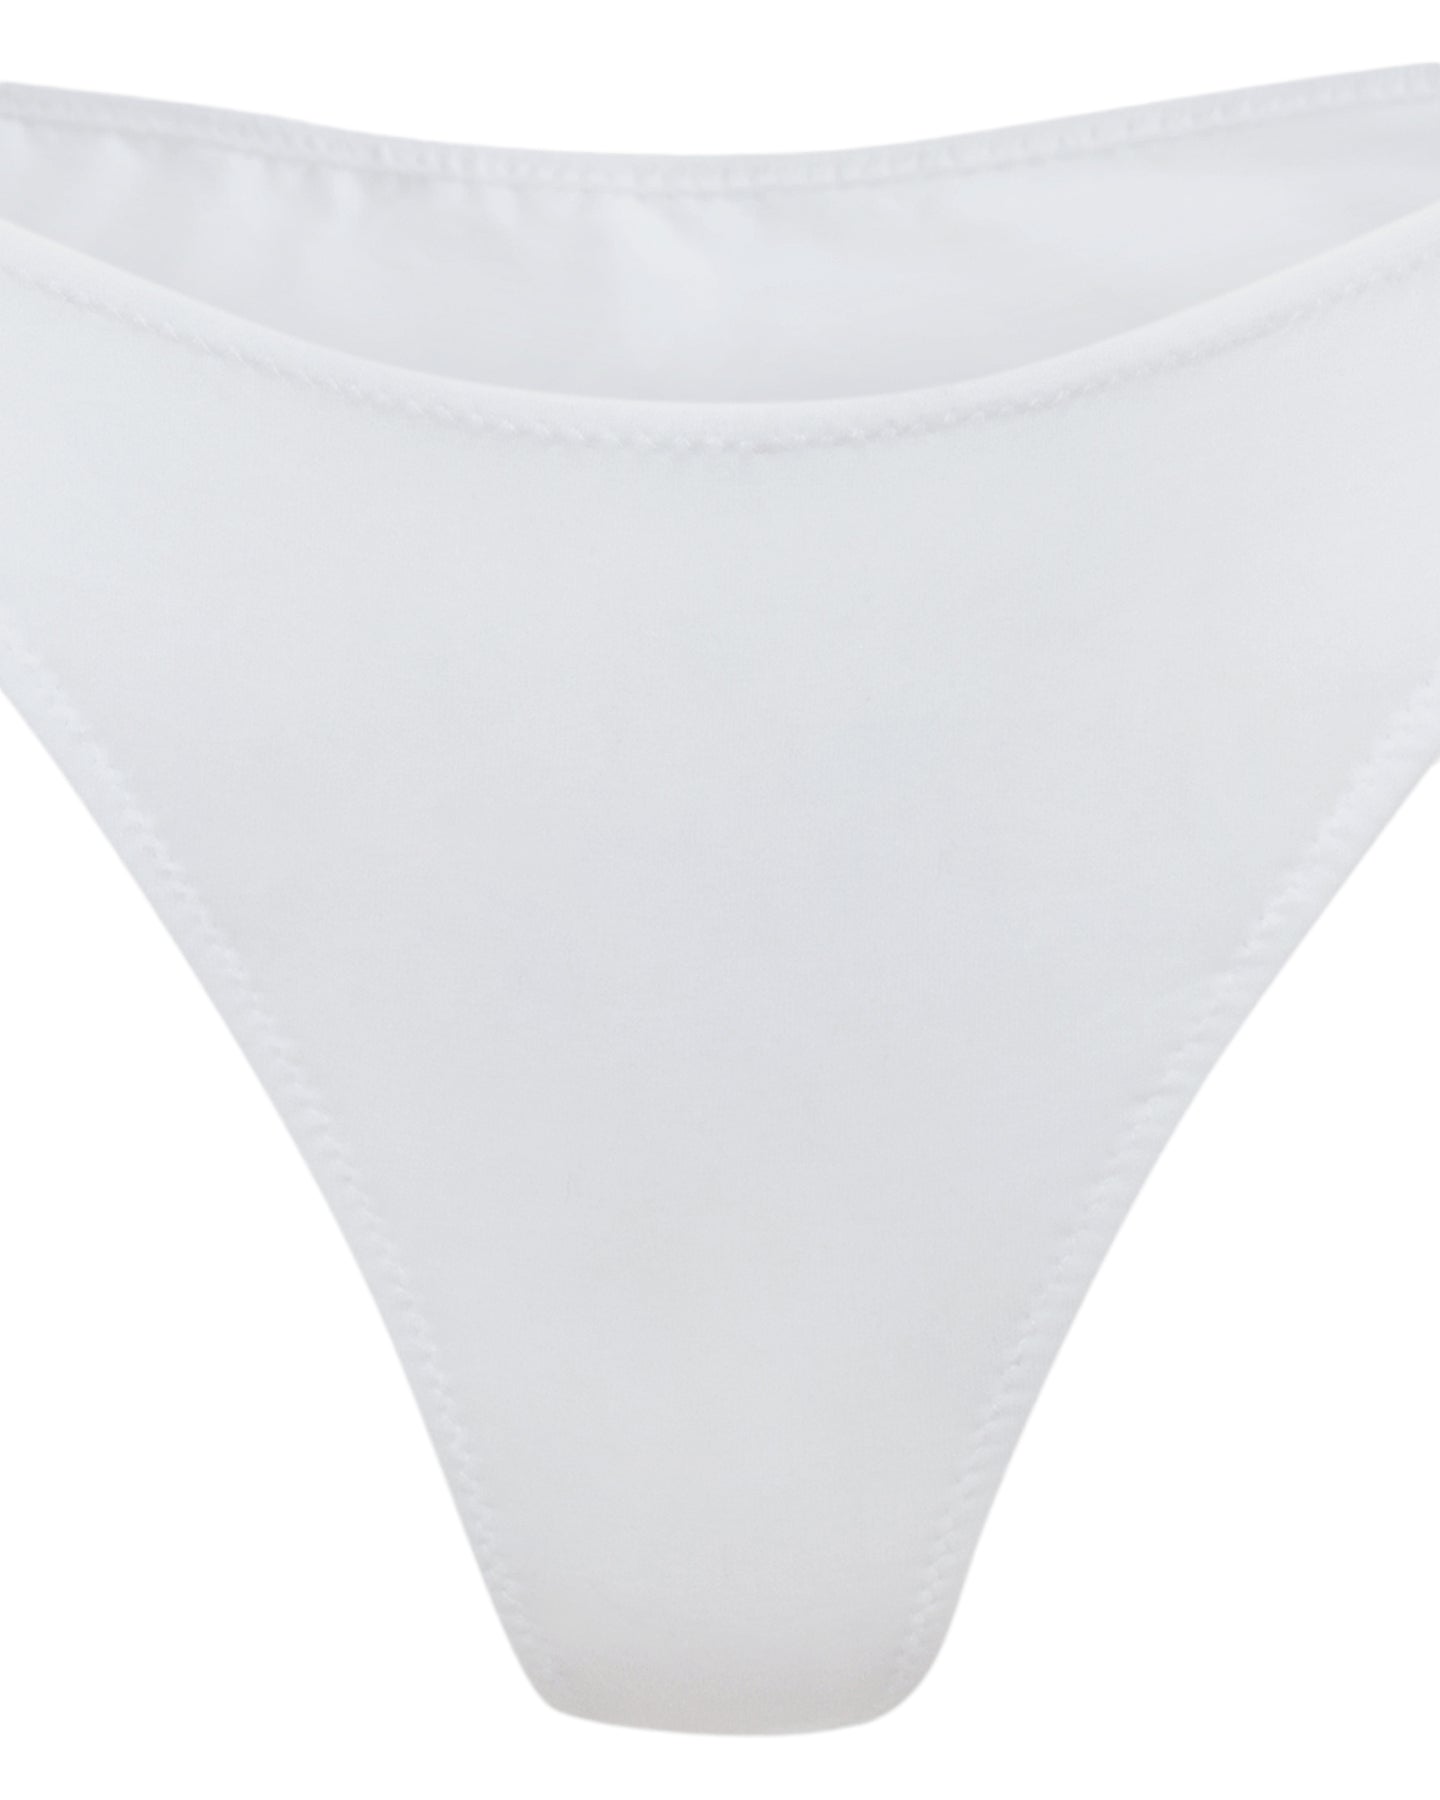 White organic cotton underwear | Women's underwear | high waisted thong | Lyzawear